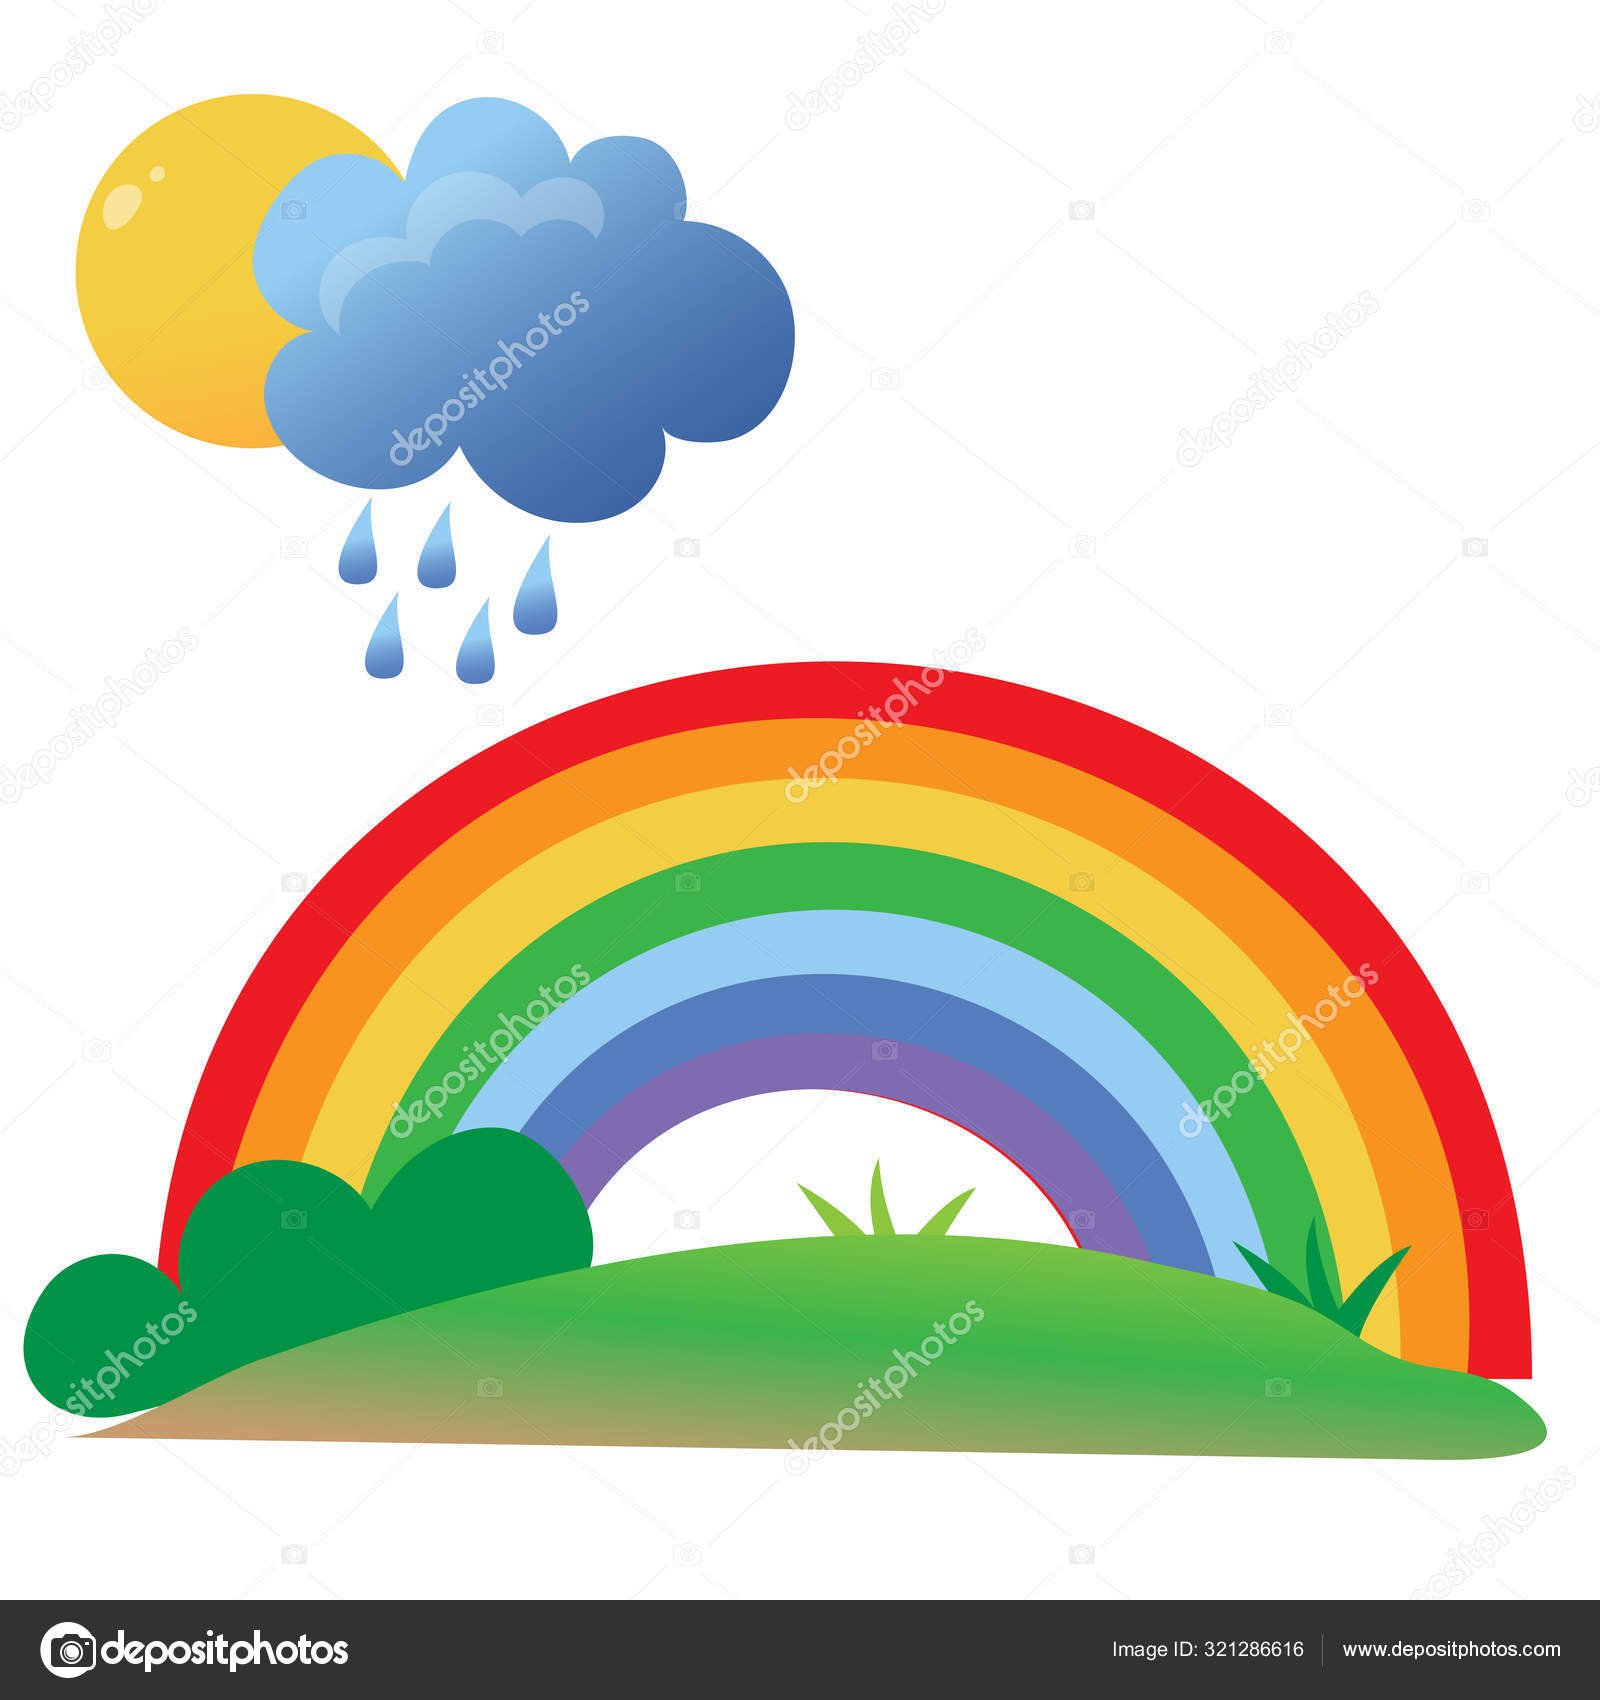 Imagens coloridas do sol dos desenhos animados com nuvens, chuva e  arco-íris no fundo branco. Jogos ao ar livre. Conjunto de ilustrações  vetoriais . imagem vetorial de Oleon17© 321286616